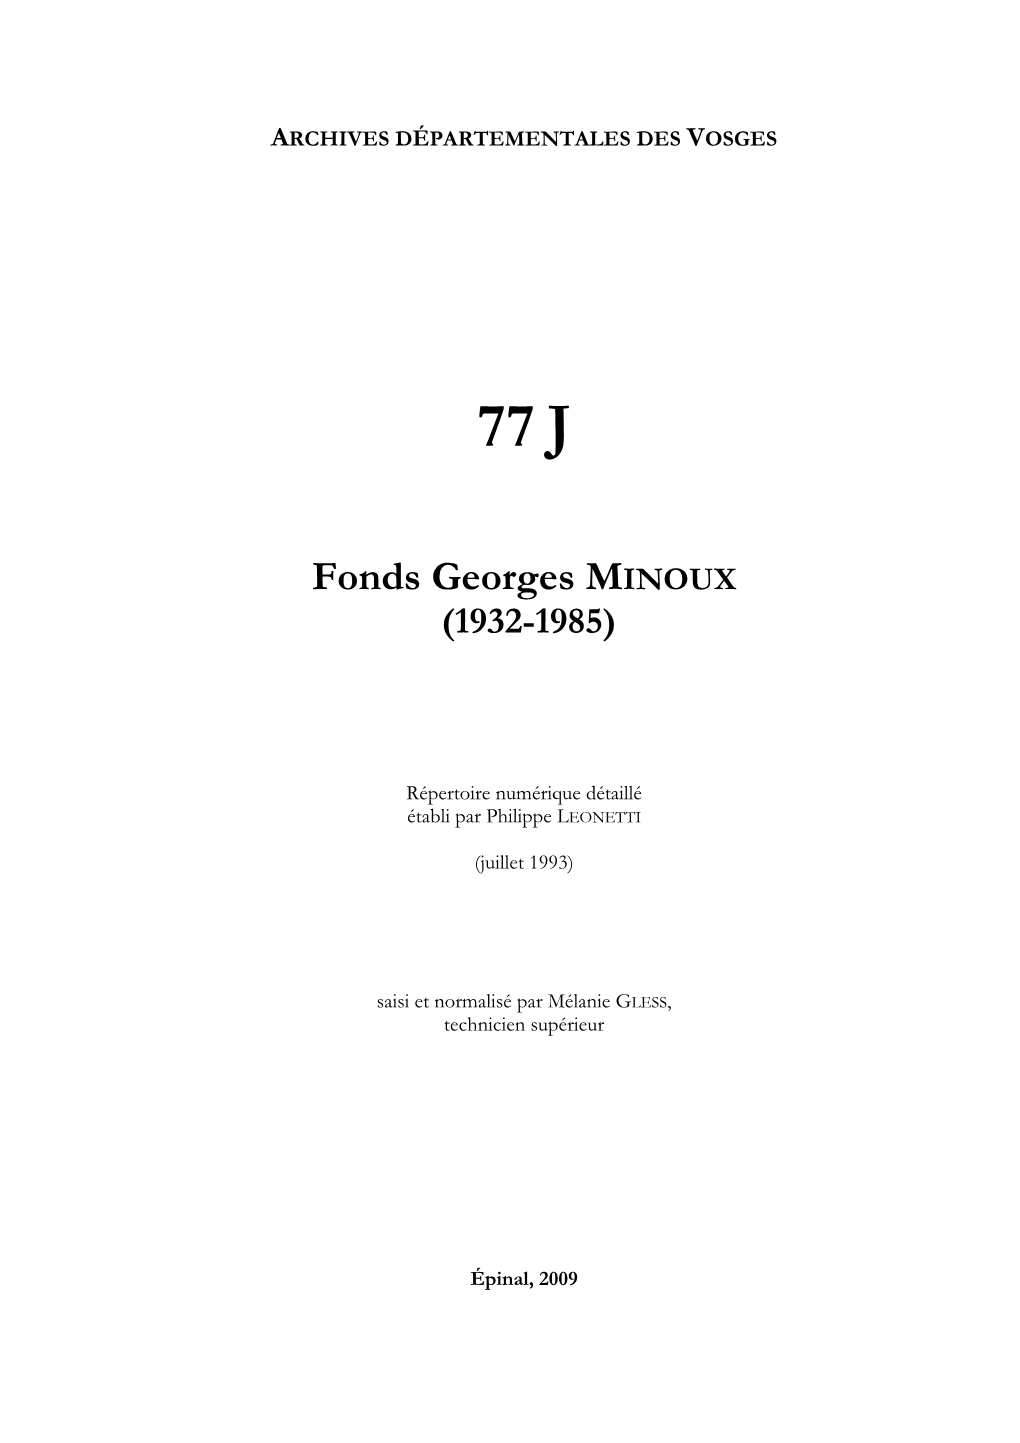 Fonds Georges Minoux, Ingénieur Géologue (1932-1985).Pdf